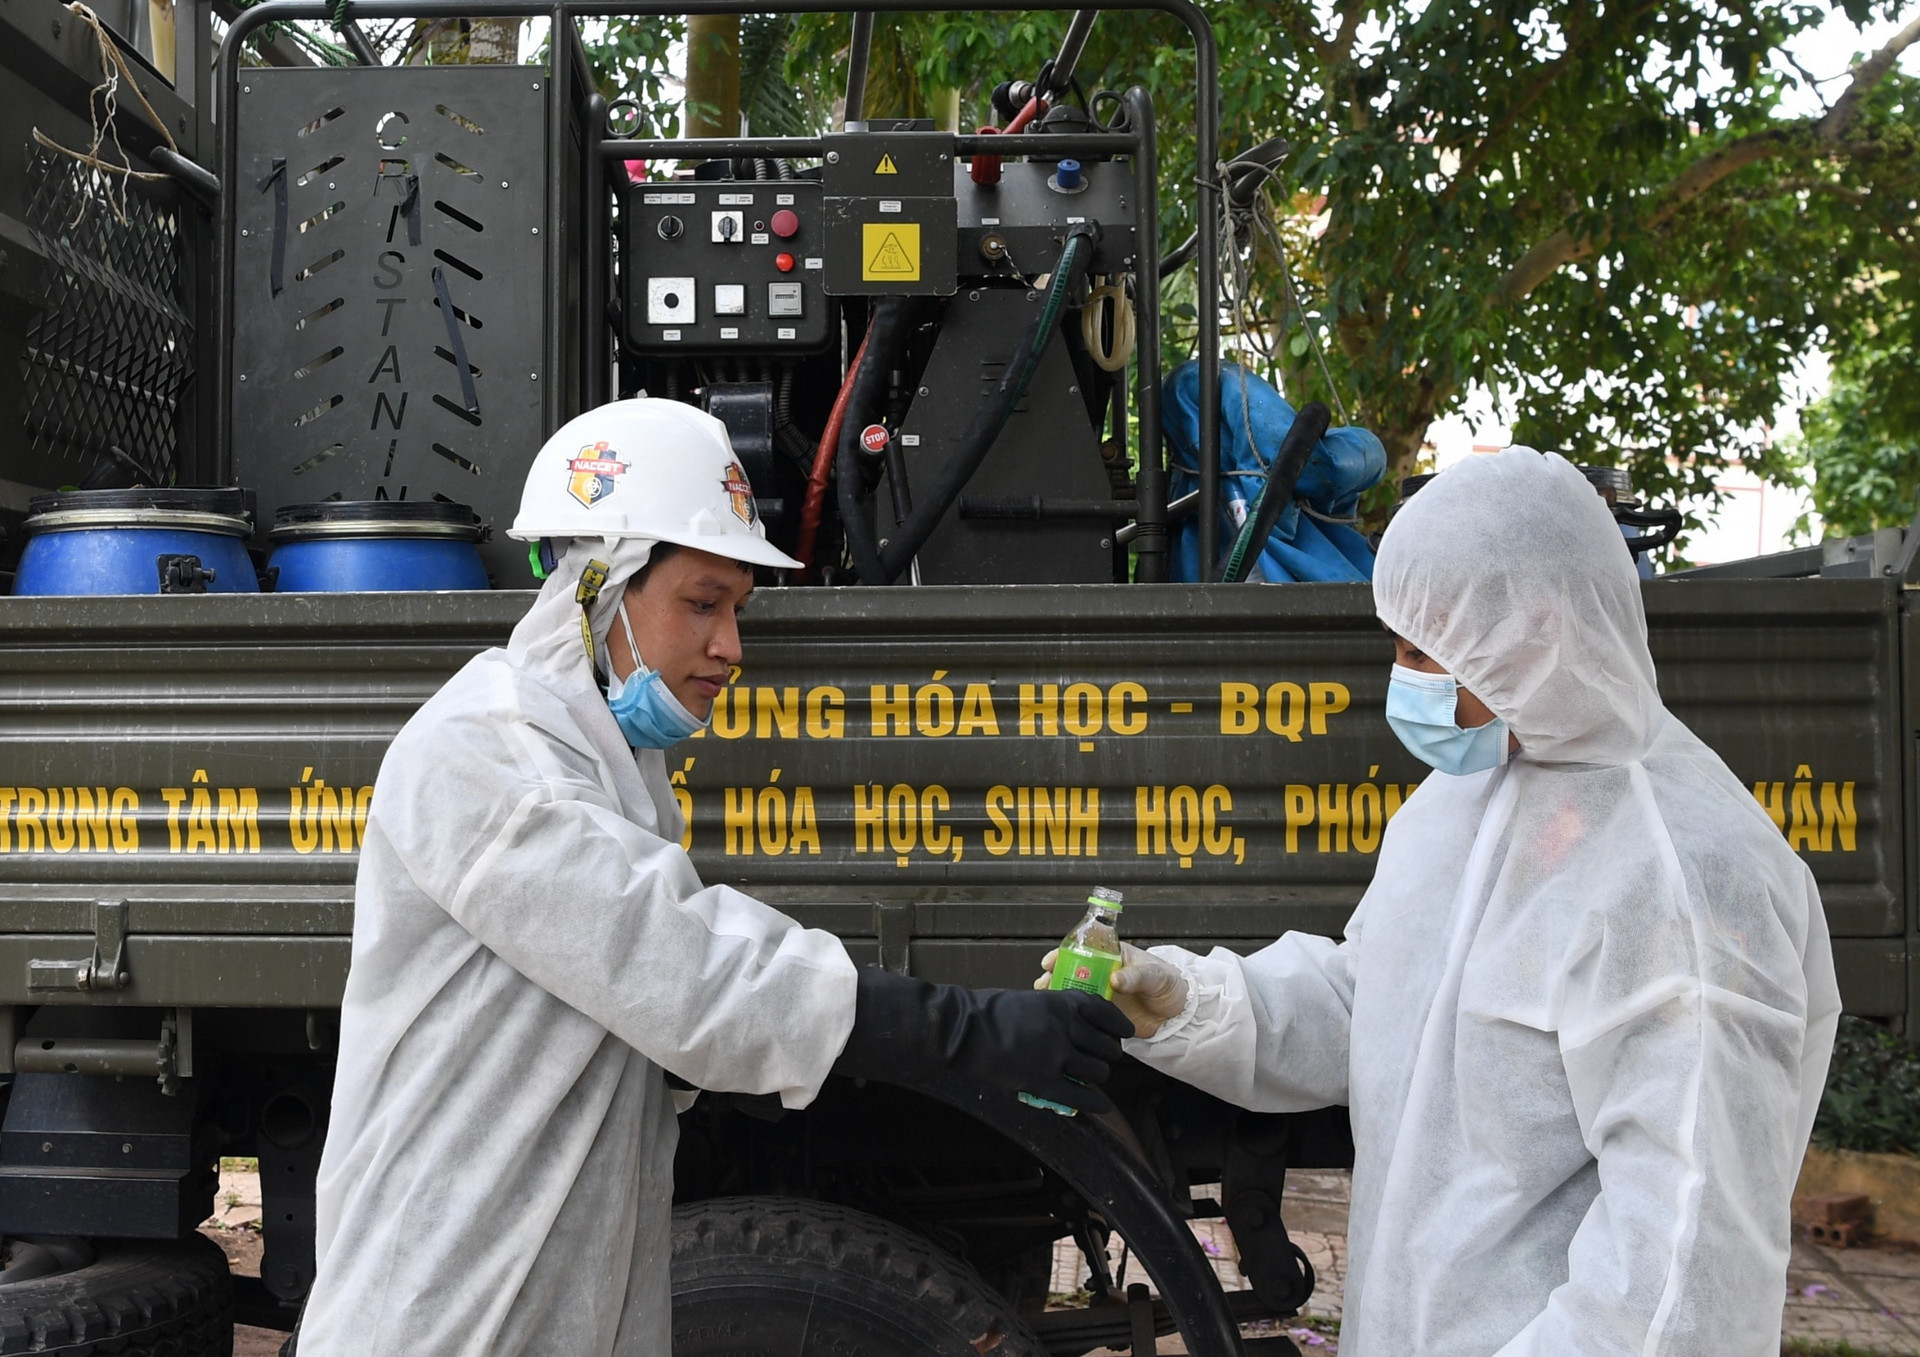 Ảnh: Dàn xe đặc chủng của quân đội khử khuẩn 4 huyện ở Bắc Giang - 6